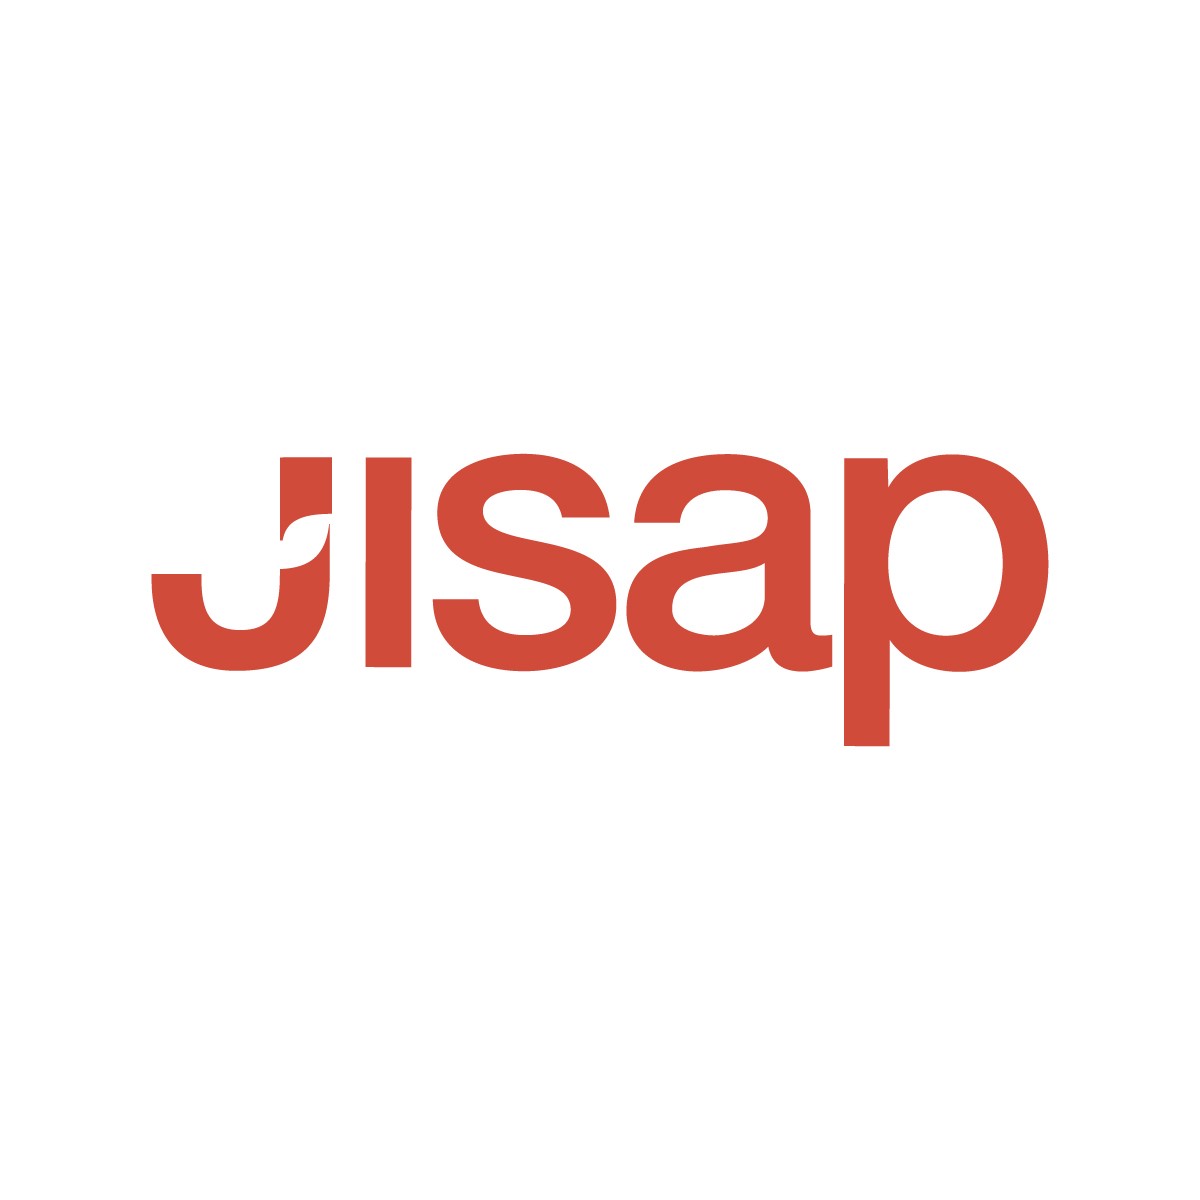 Logo Jisap